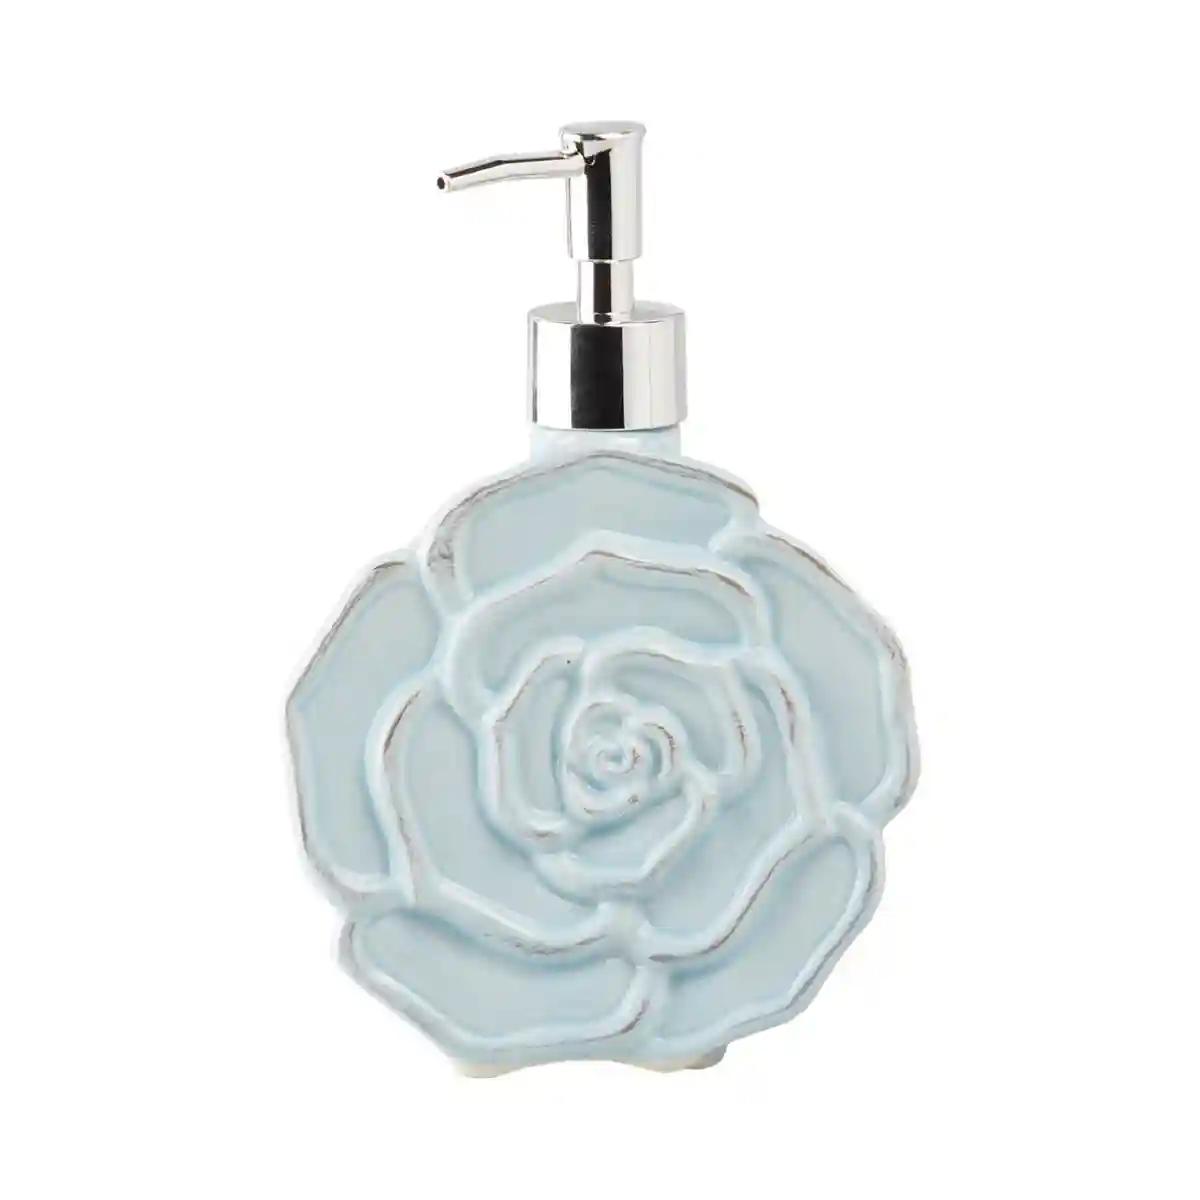 Kookee Ceramic Soap Dispenser for Bathroom handwash, refillable pump bottle for Kitchen hand wash basin, Set of 2 - Blue (7959)